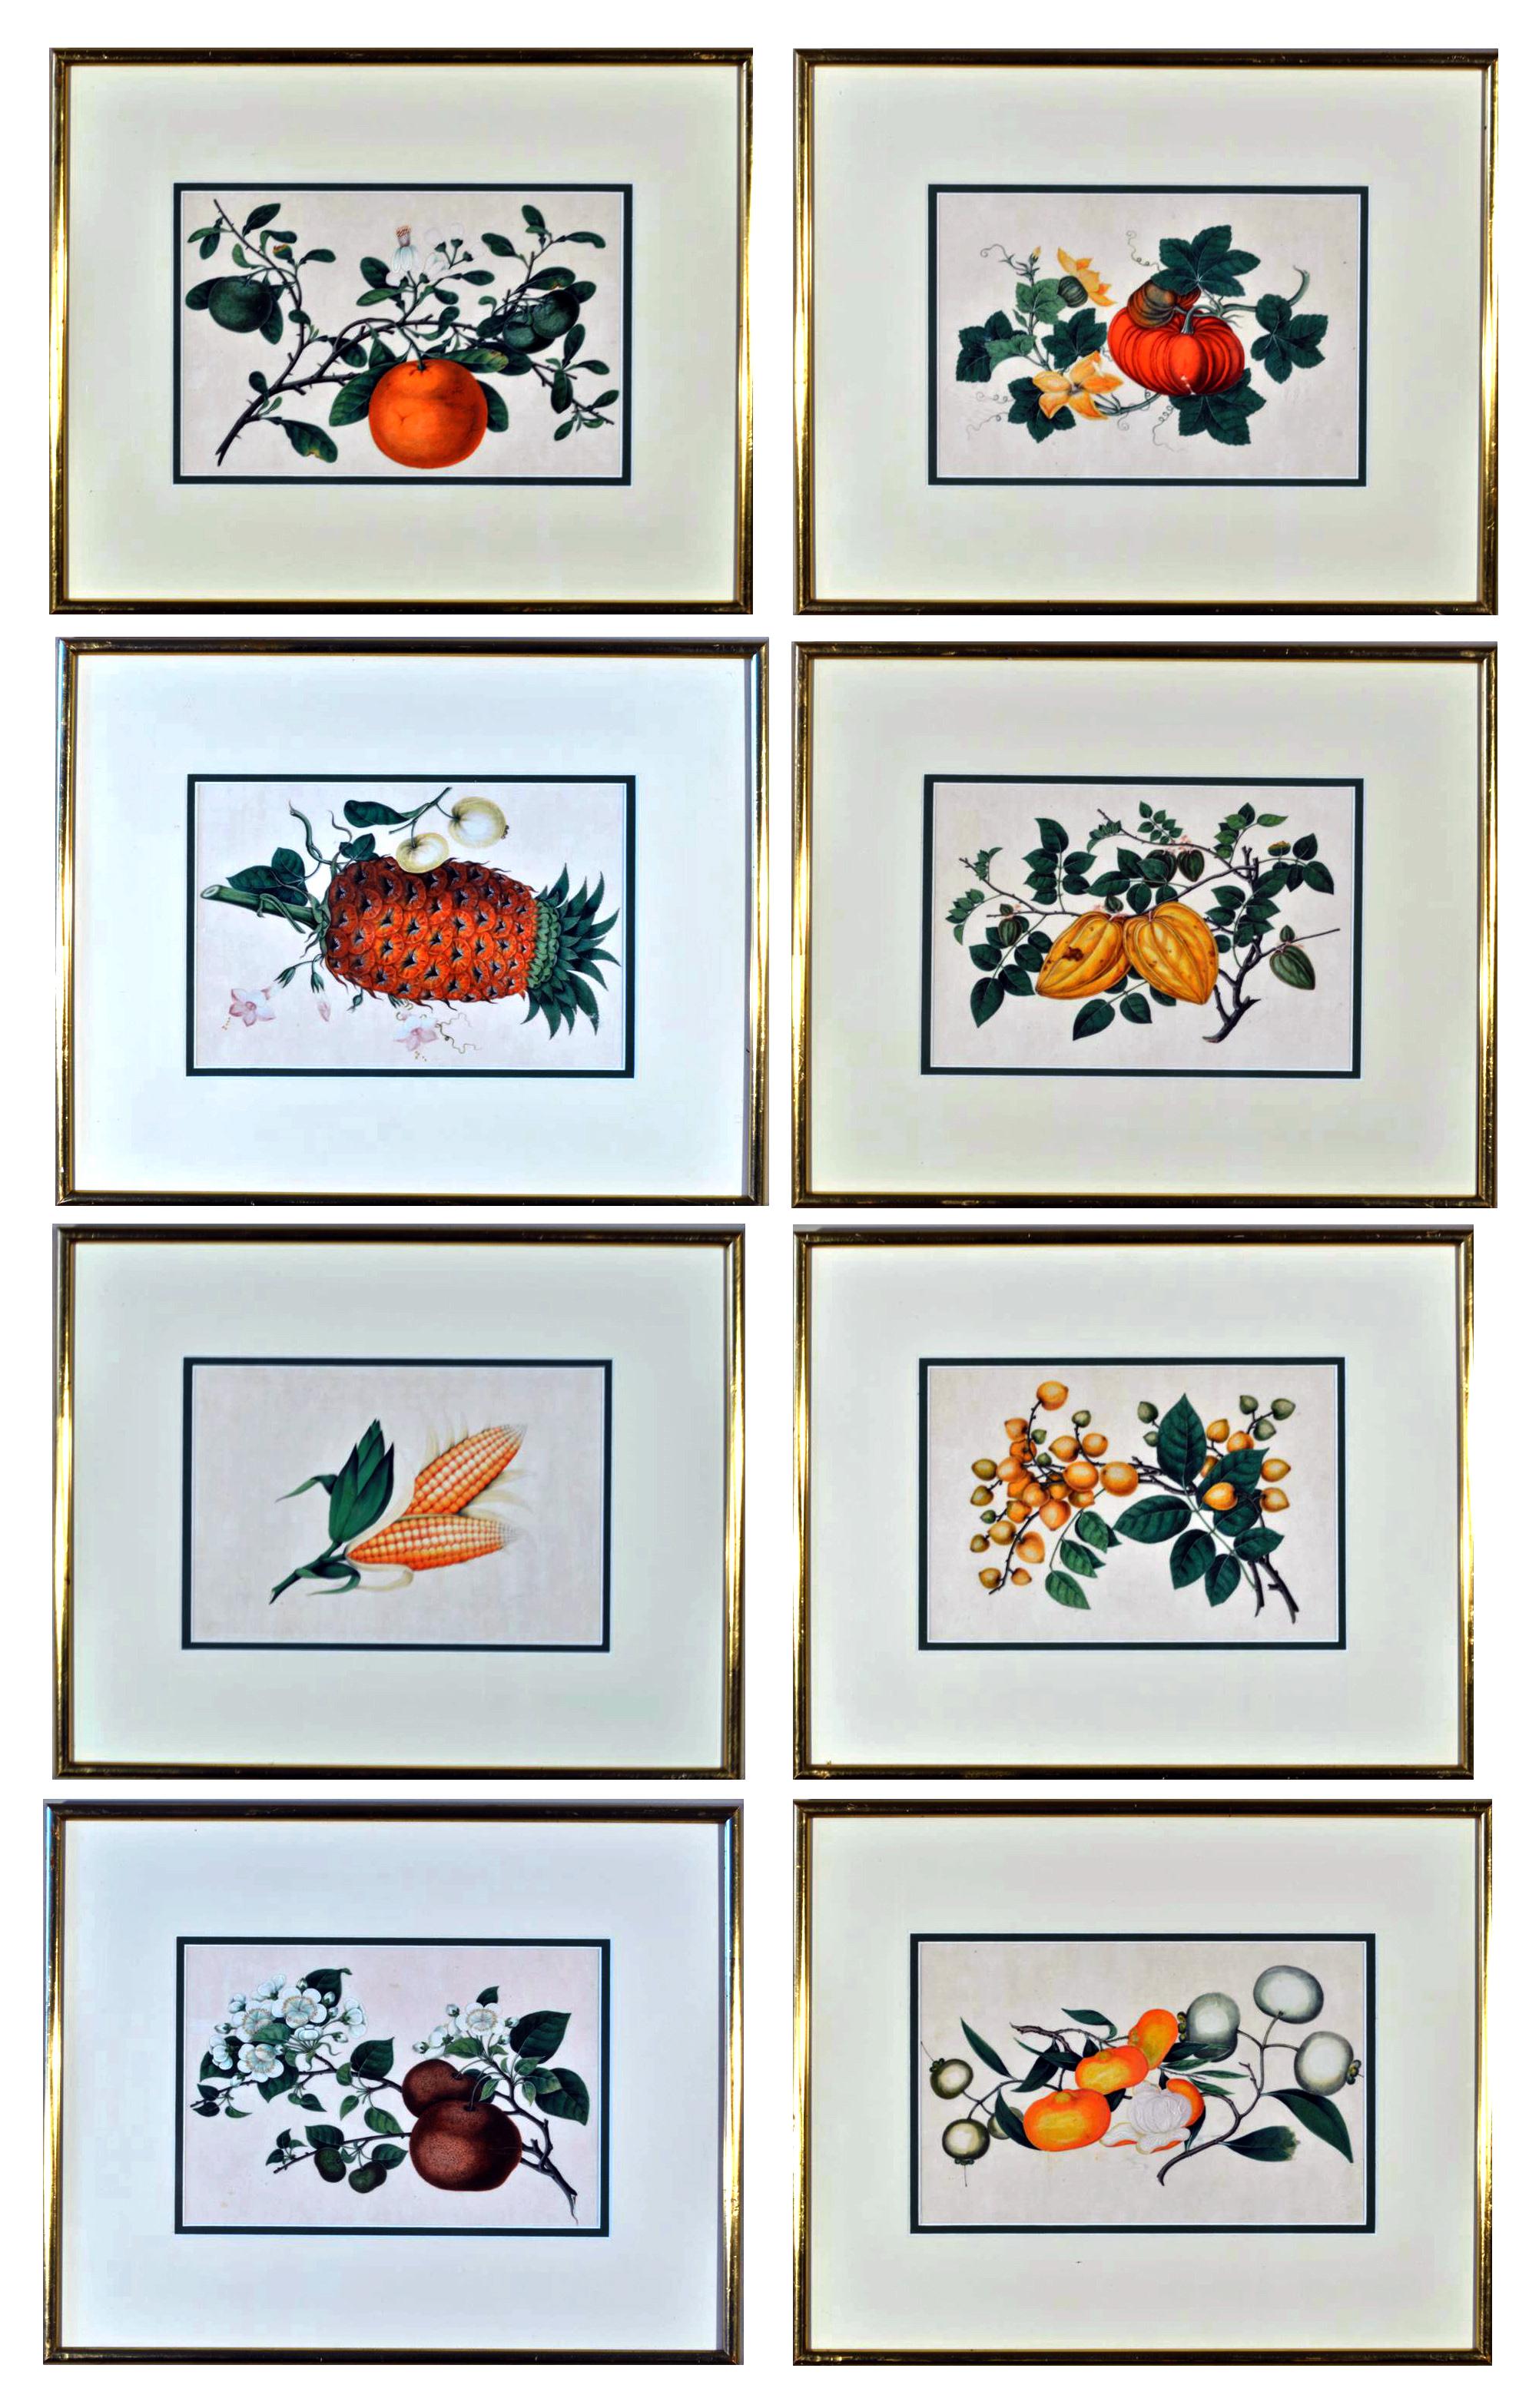 Aquarelles de fruits exotiques sur papier à moelle,
Cadres dorés,
Milieu du XIXe siècle

Les huit aquarelles chinoises sur papier à moelle sont d'une grande qualité et représentent divers fruits exotiques, notamment des ananas, des litchis, des